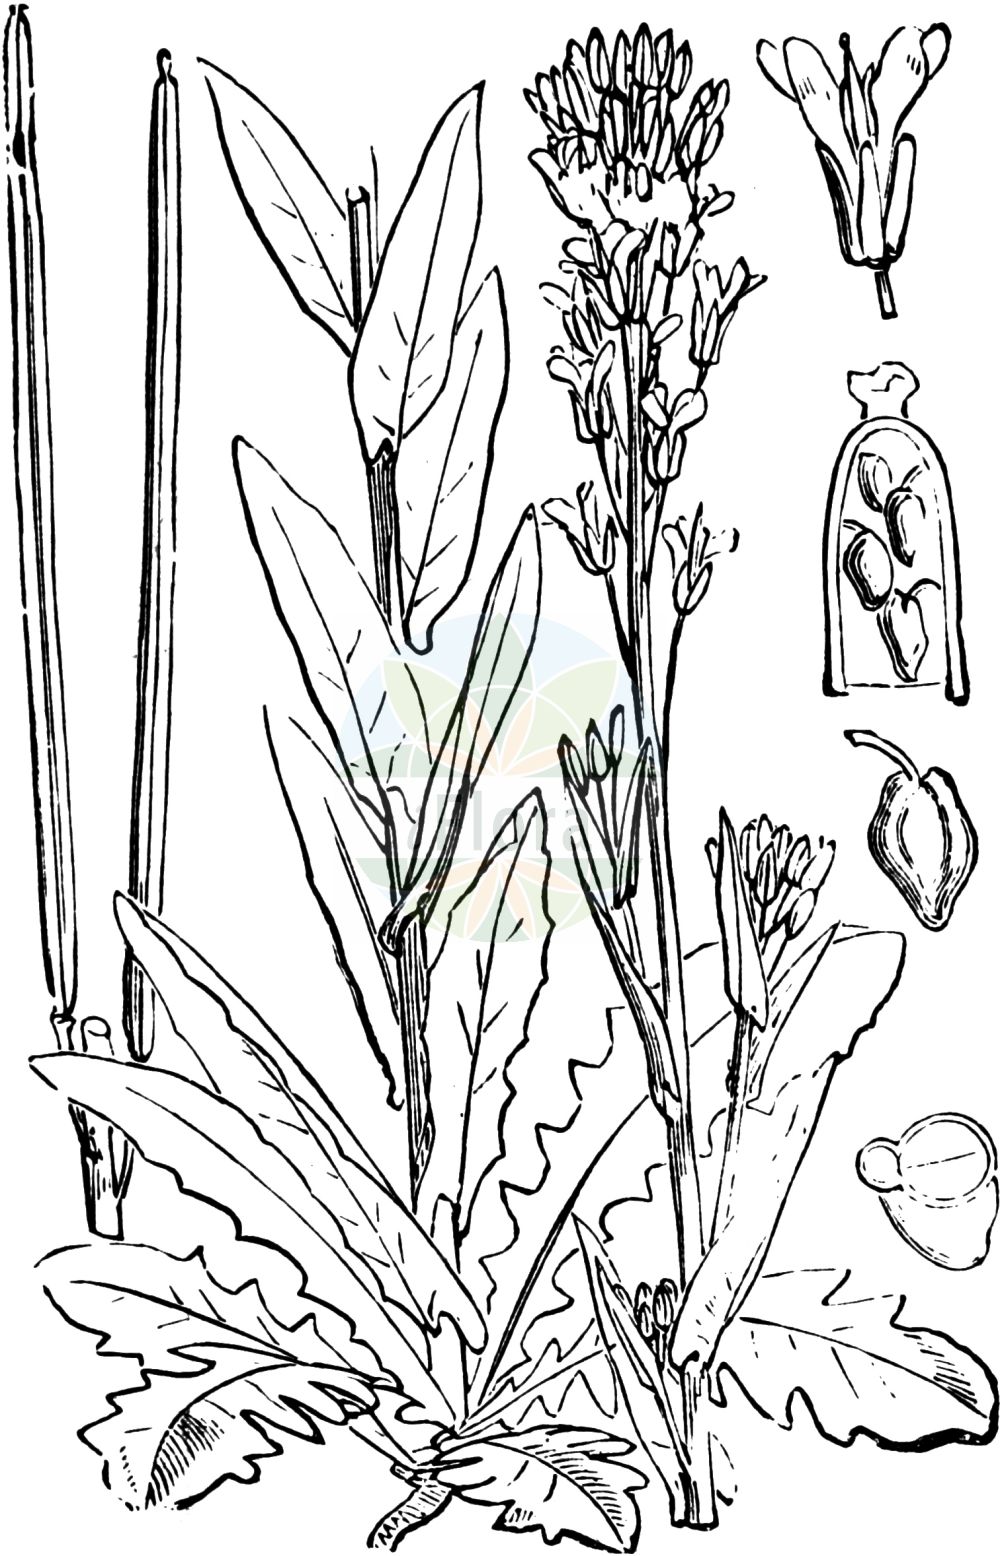 Historische Abbildung von Turritis glabra (Kahle Gänsekresse - Tower Mustard). Das Bild zeigt Blatt, Bluete, Frucht und Same. ---- Historical Drawing of Turritis glabra (Kahle Gänsekresse - Tower Mustard). The image is showing leaf, flower, fruit and seed.(Turritis glabra,Kahle Gänsekresse,Tower Mustard,Arabis crepidipoda,Arabis glabra,Arabis perfoliata,Arabis pseudoturritis,Turritis glabra,Turritis pseudoturritis,Kahle Gaensekresse,Turmkraut,Tower Mustard,Glabrous Tower Cress,Garden Arabis,Tower Rockcress,Turritis,Turmkraut,Brassicaceae,Kreuzblütler,Cabbage family,Blatt,Bluete,Frucht,Same,leaf,flower,fruit,seed,Fitch et al. (1880))